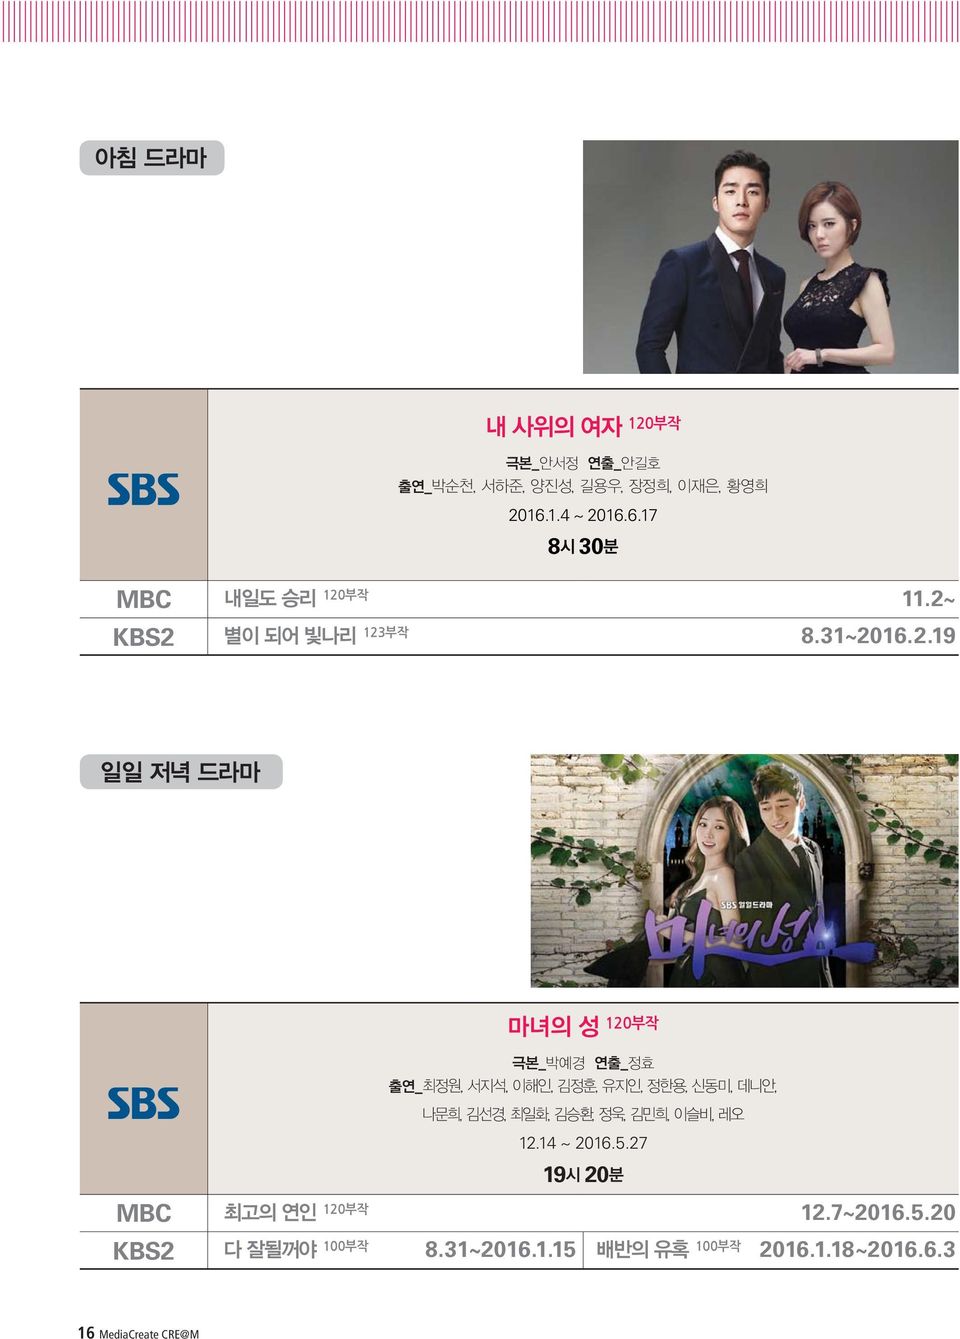 27 1920 MBC 12.7~2016.5.20 KBS2 8.